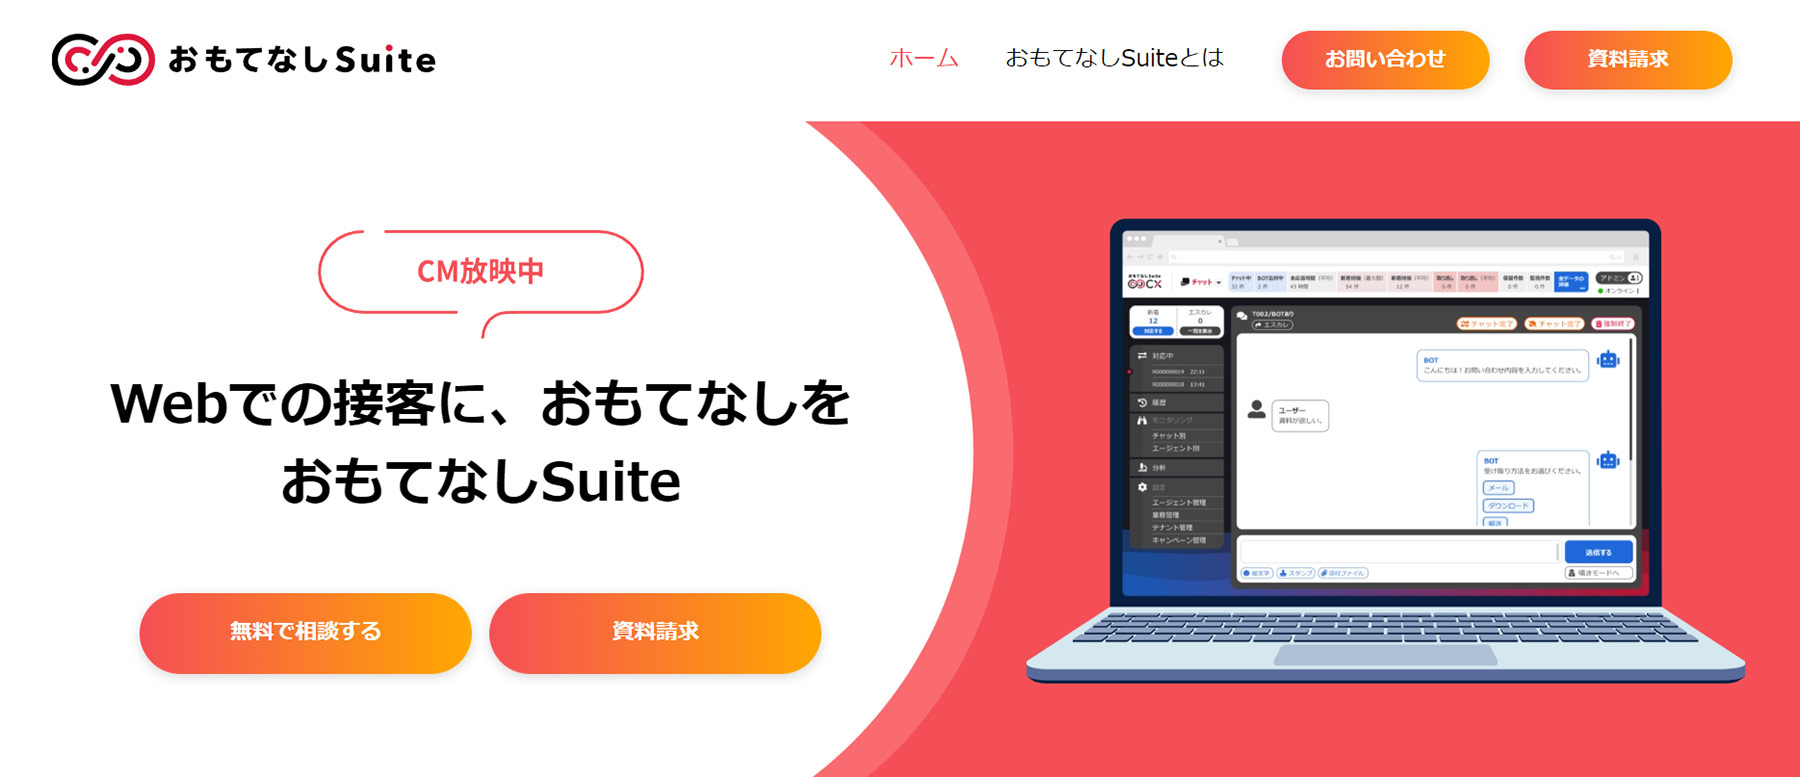 おもてなしSuite公式WEBサイト